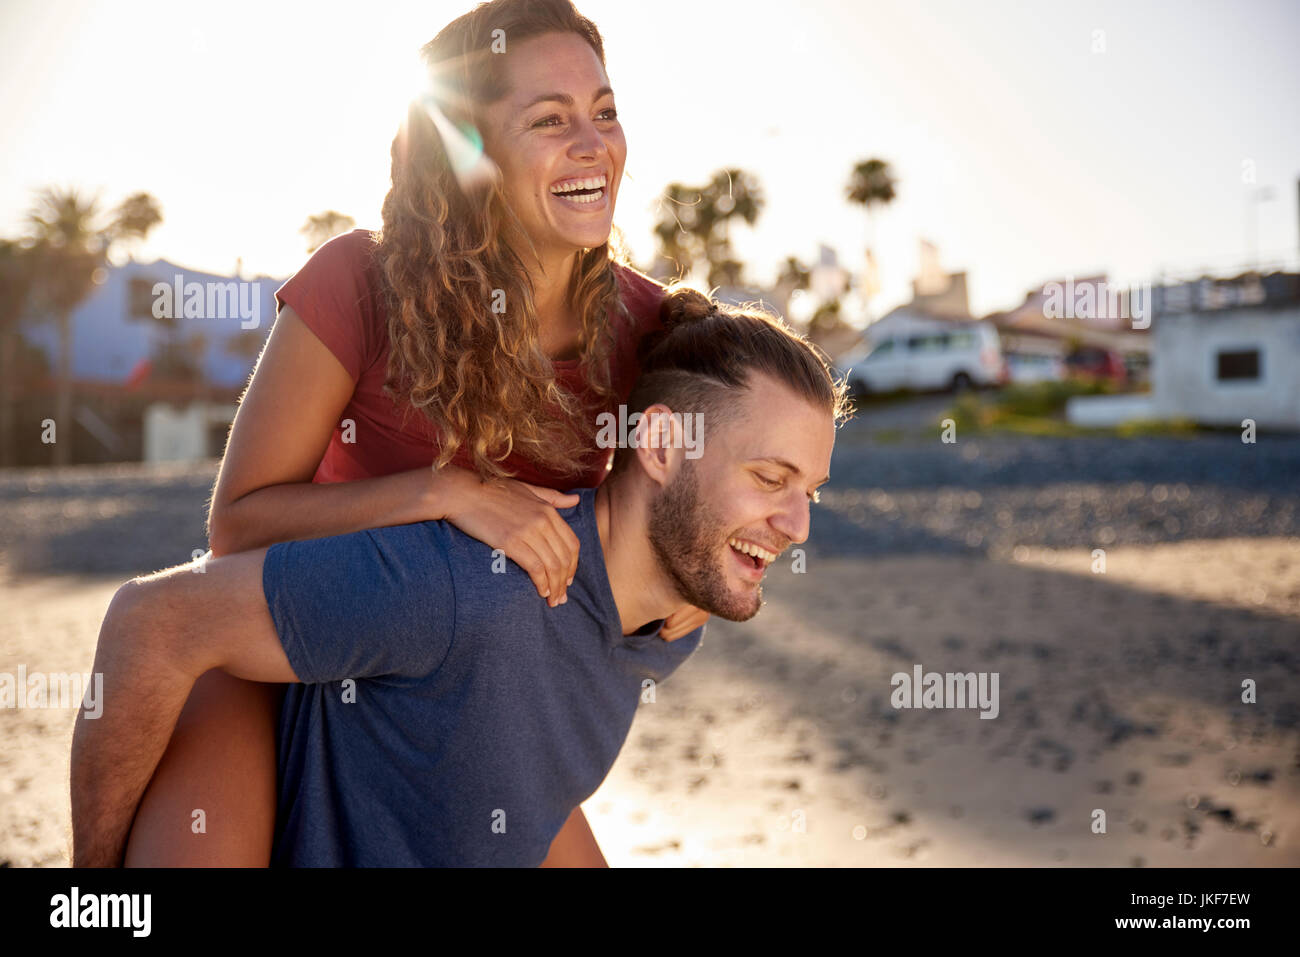 Junge Mann seiner Freundin ein huckepack Fahrt am Strand geben Stockfoto